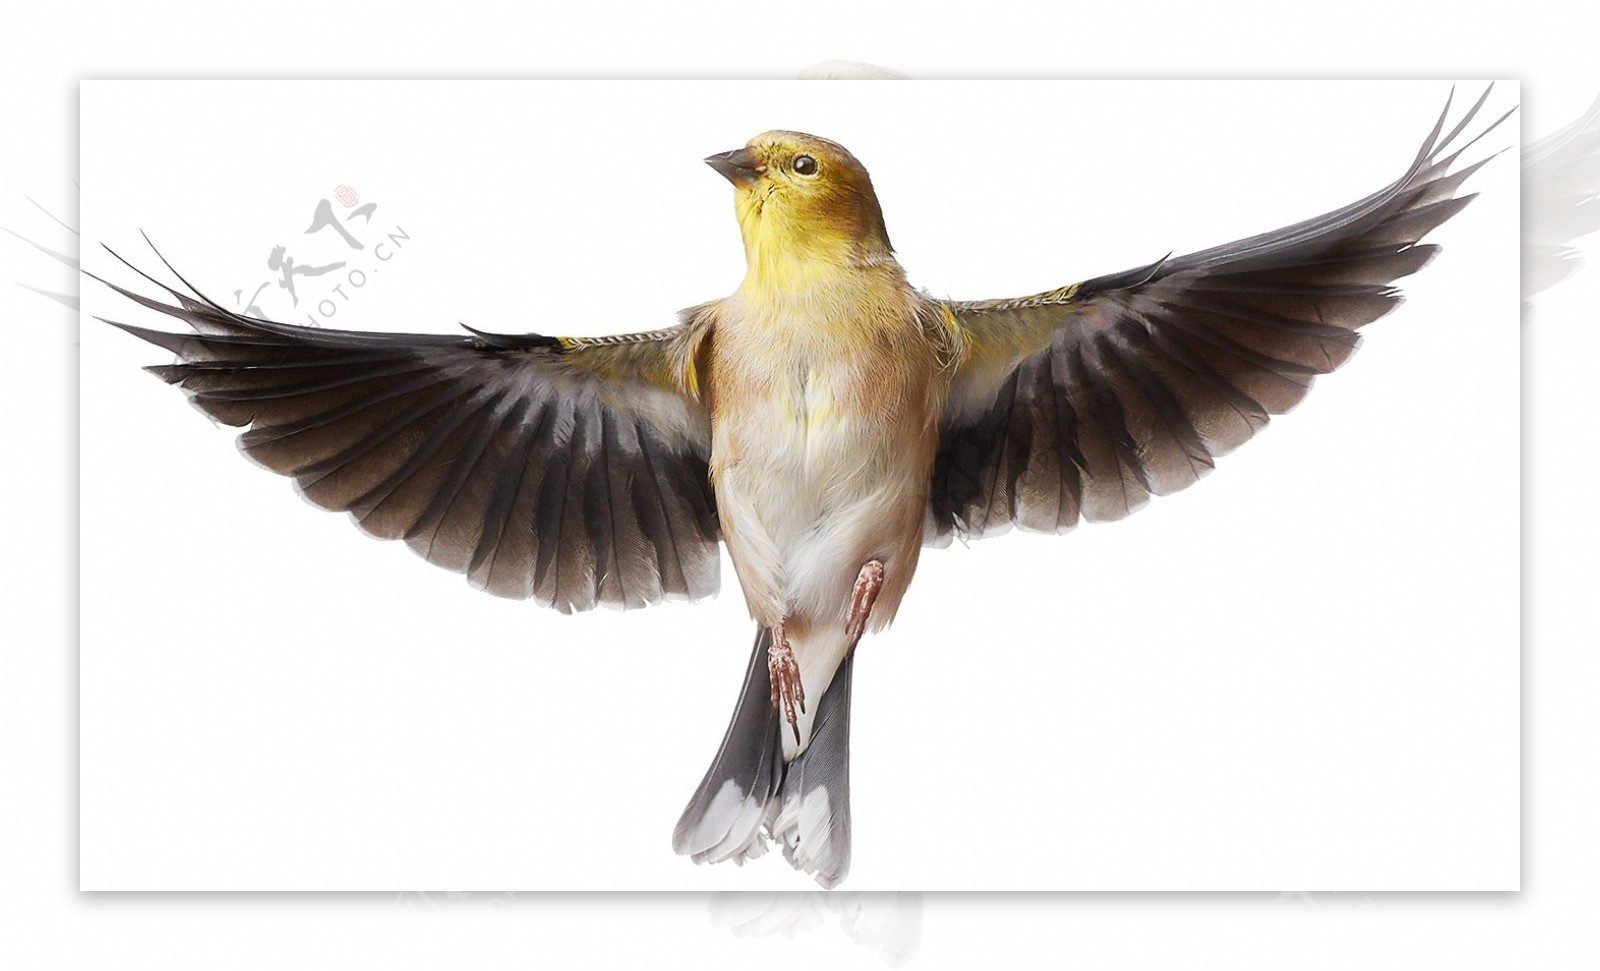 展翅飞翔的小鸟图片免抠png透明图层素材